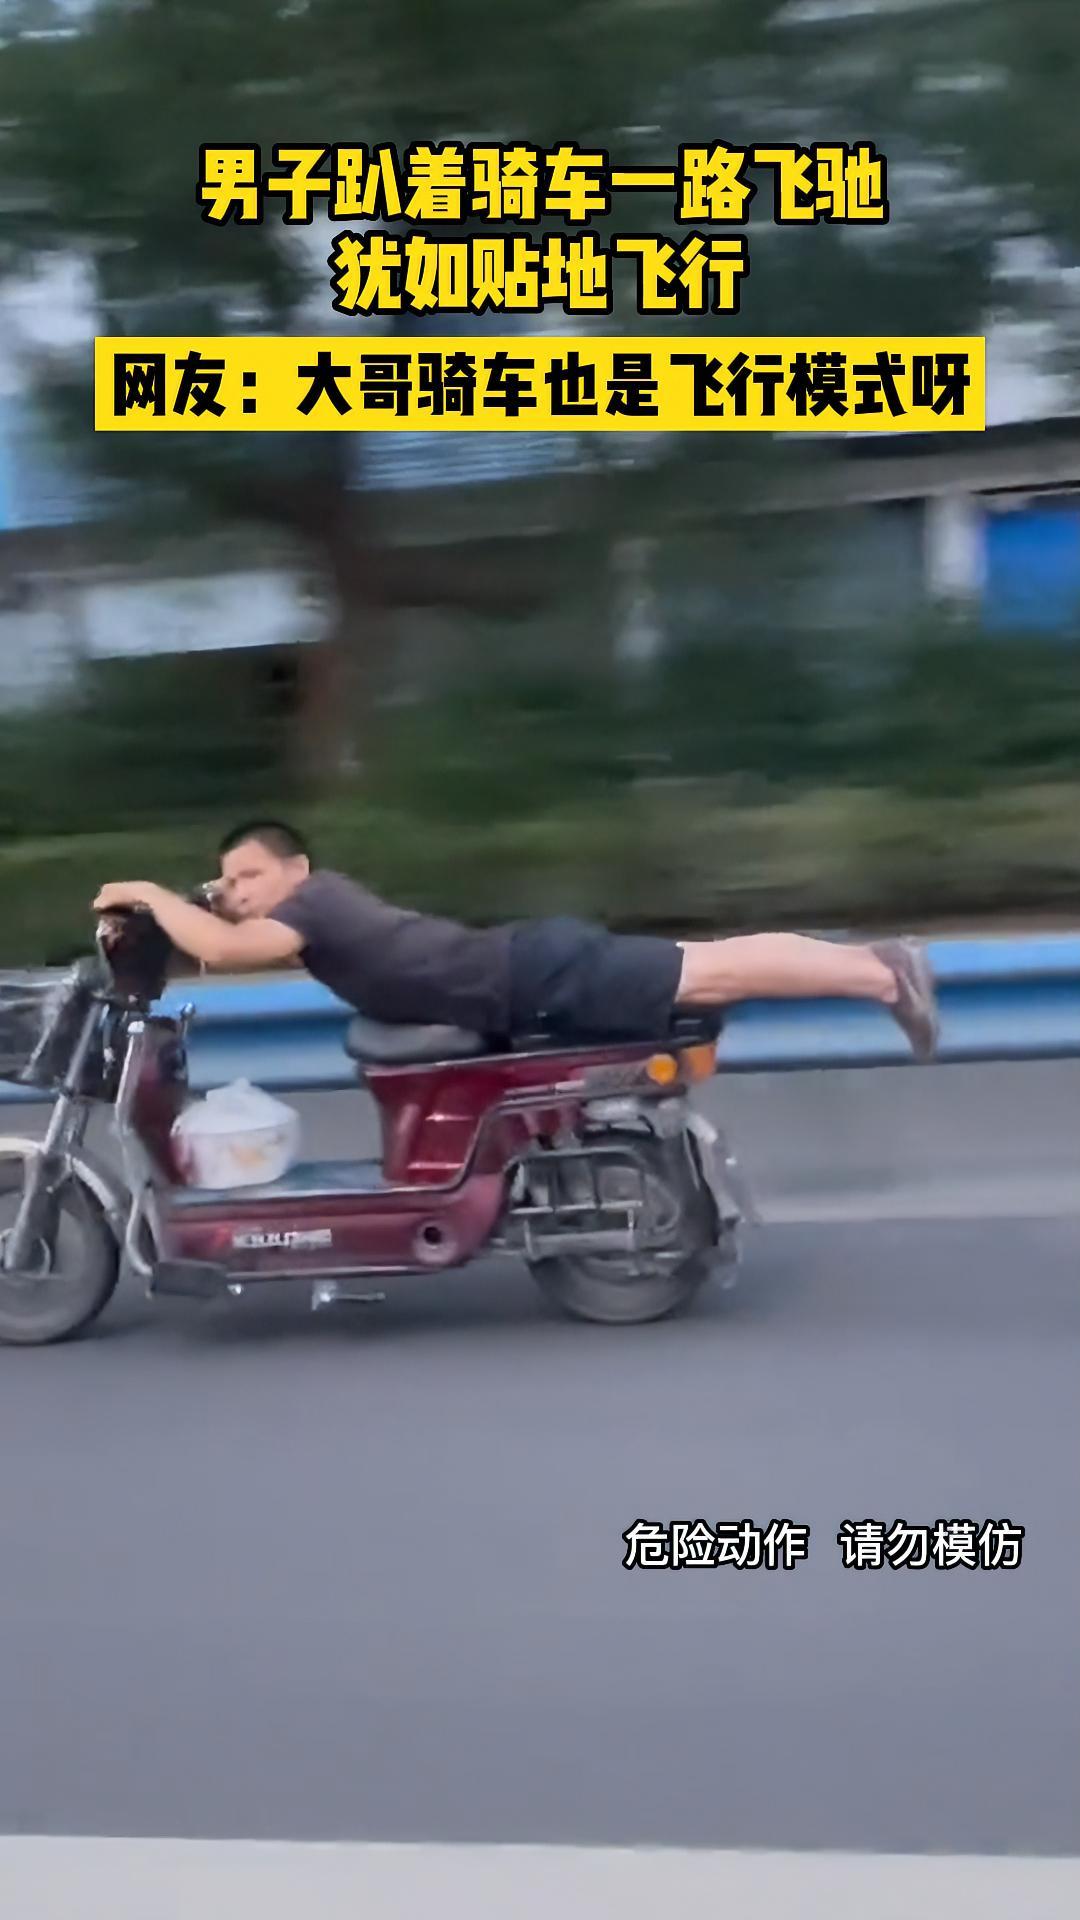 7月25日浙江杭州男子趴着骑车一路飞驰犹如贴地飞行网友大哥骑车也是